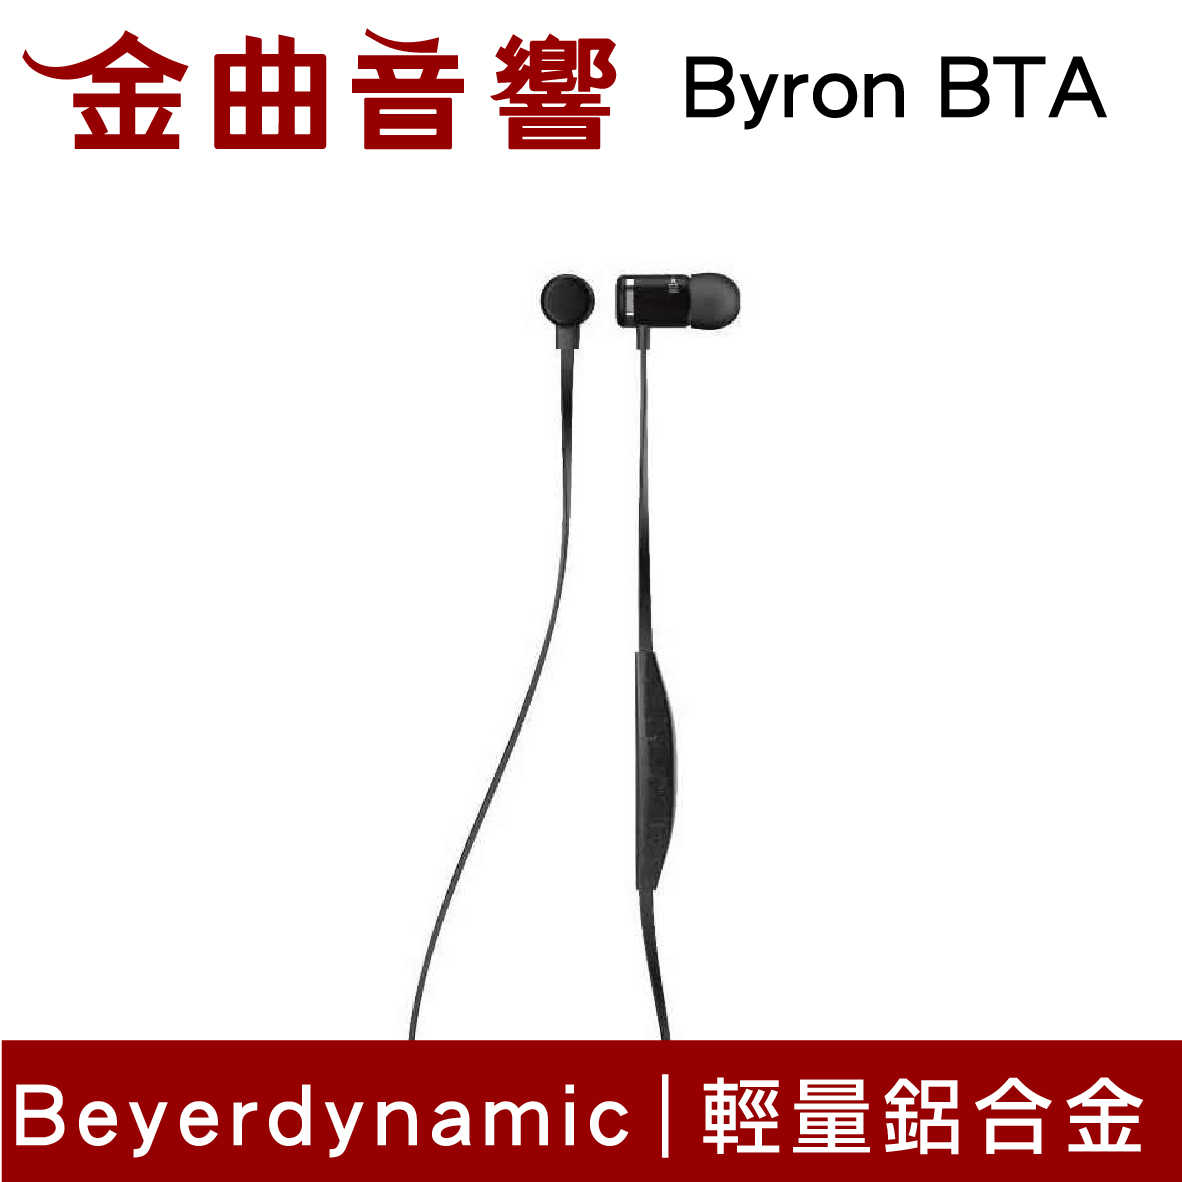 【福利機D組】Beyerdynamic 拜耳 Byron BTA 線控 無線 藍芽 耳道式耳機 | 金曲音響